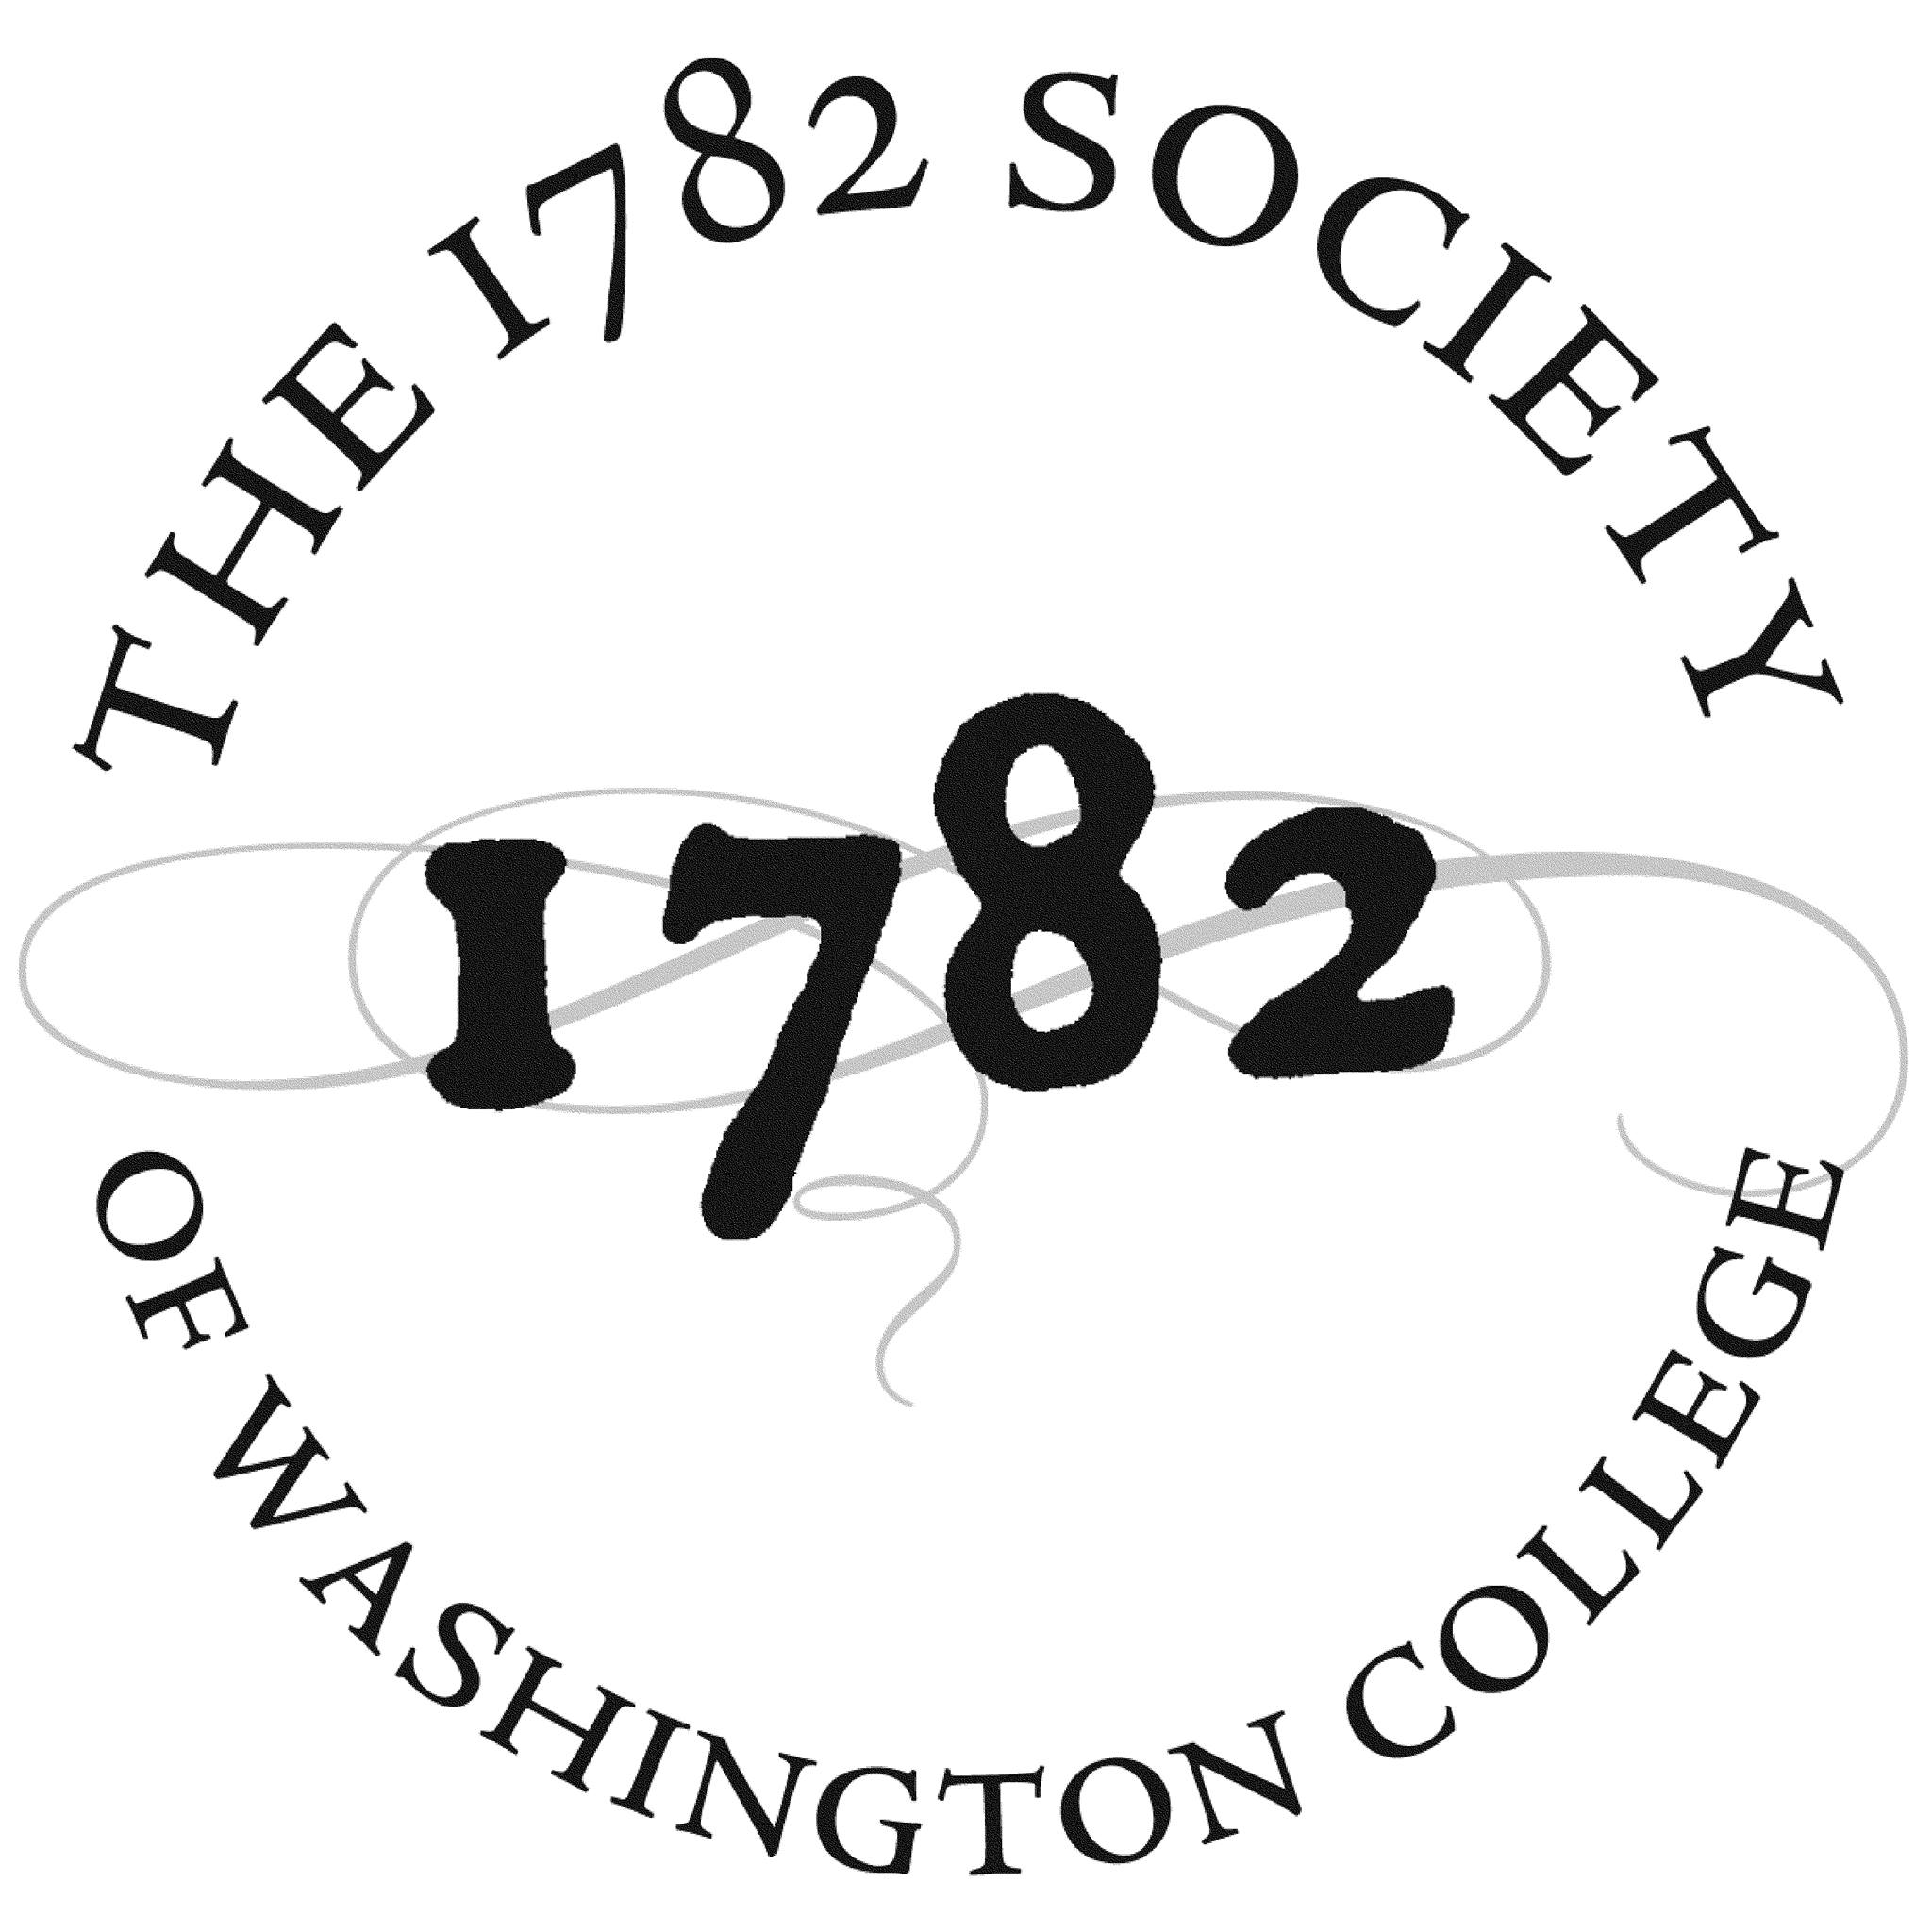 The 1782 Society